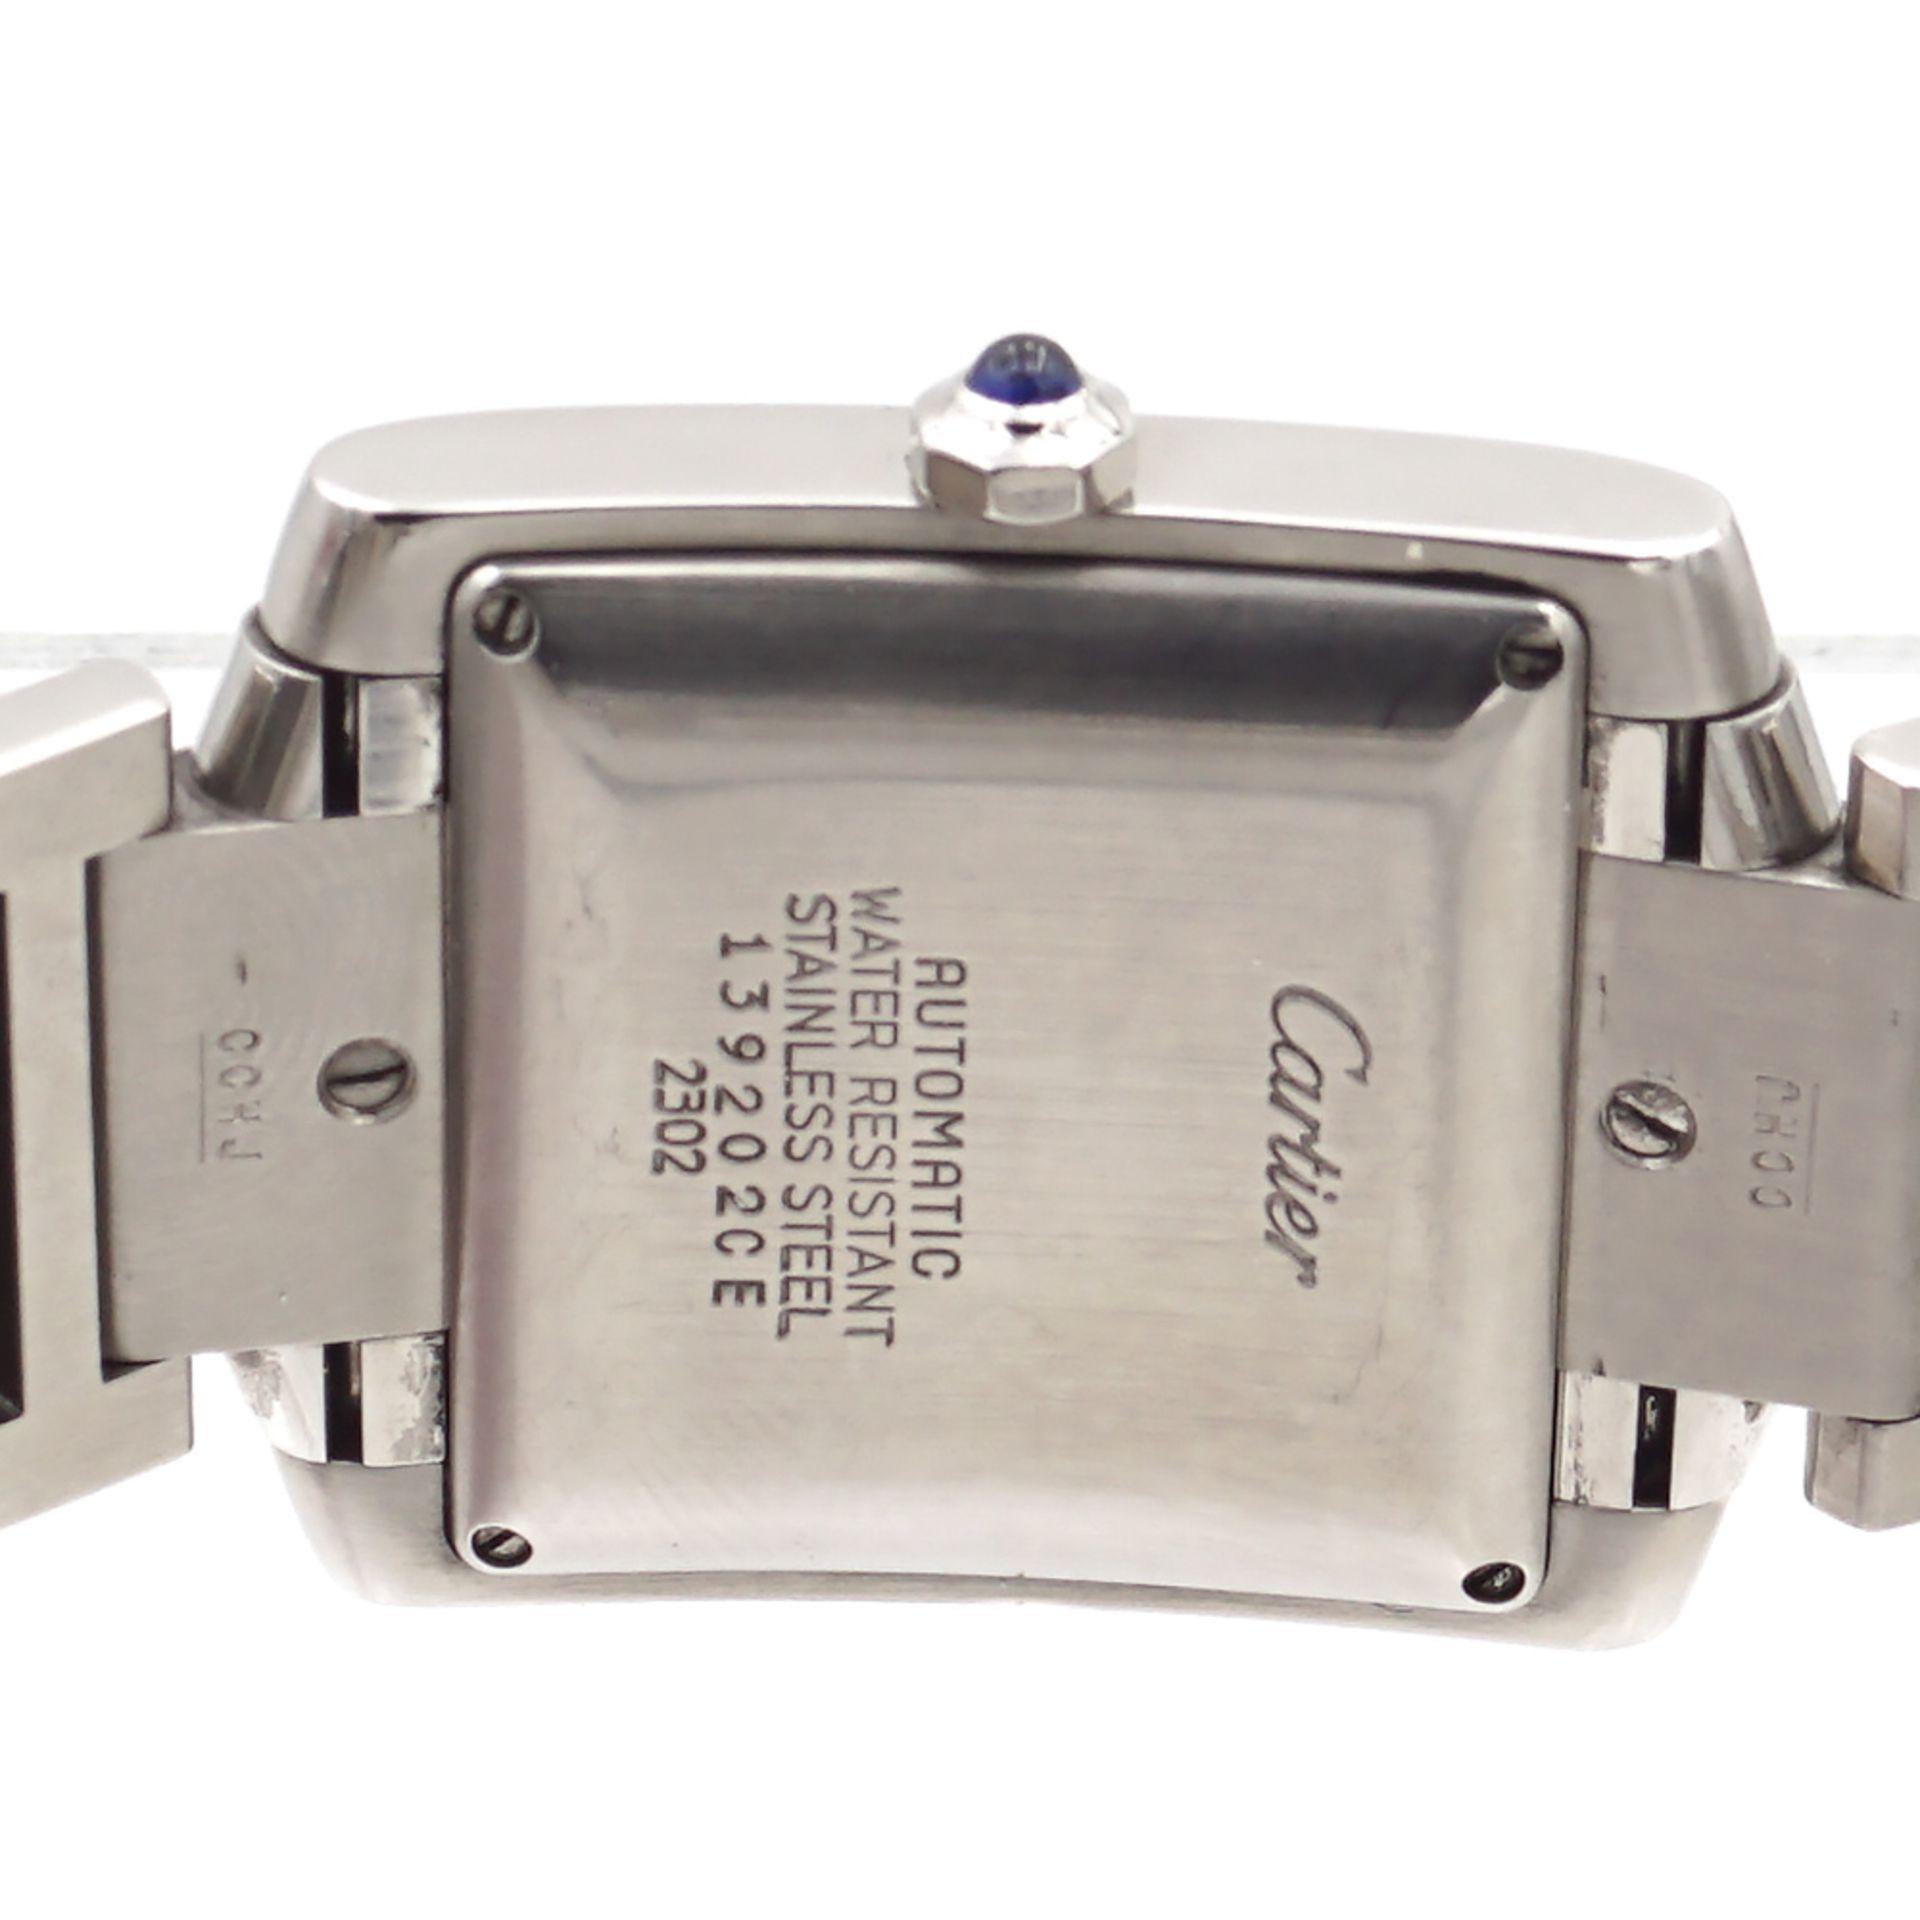 Cartier Tank Française, wrist watch 2000s weight 94,74 gr. - Image 4 of 4